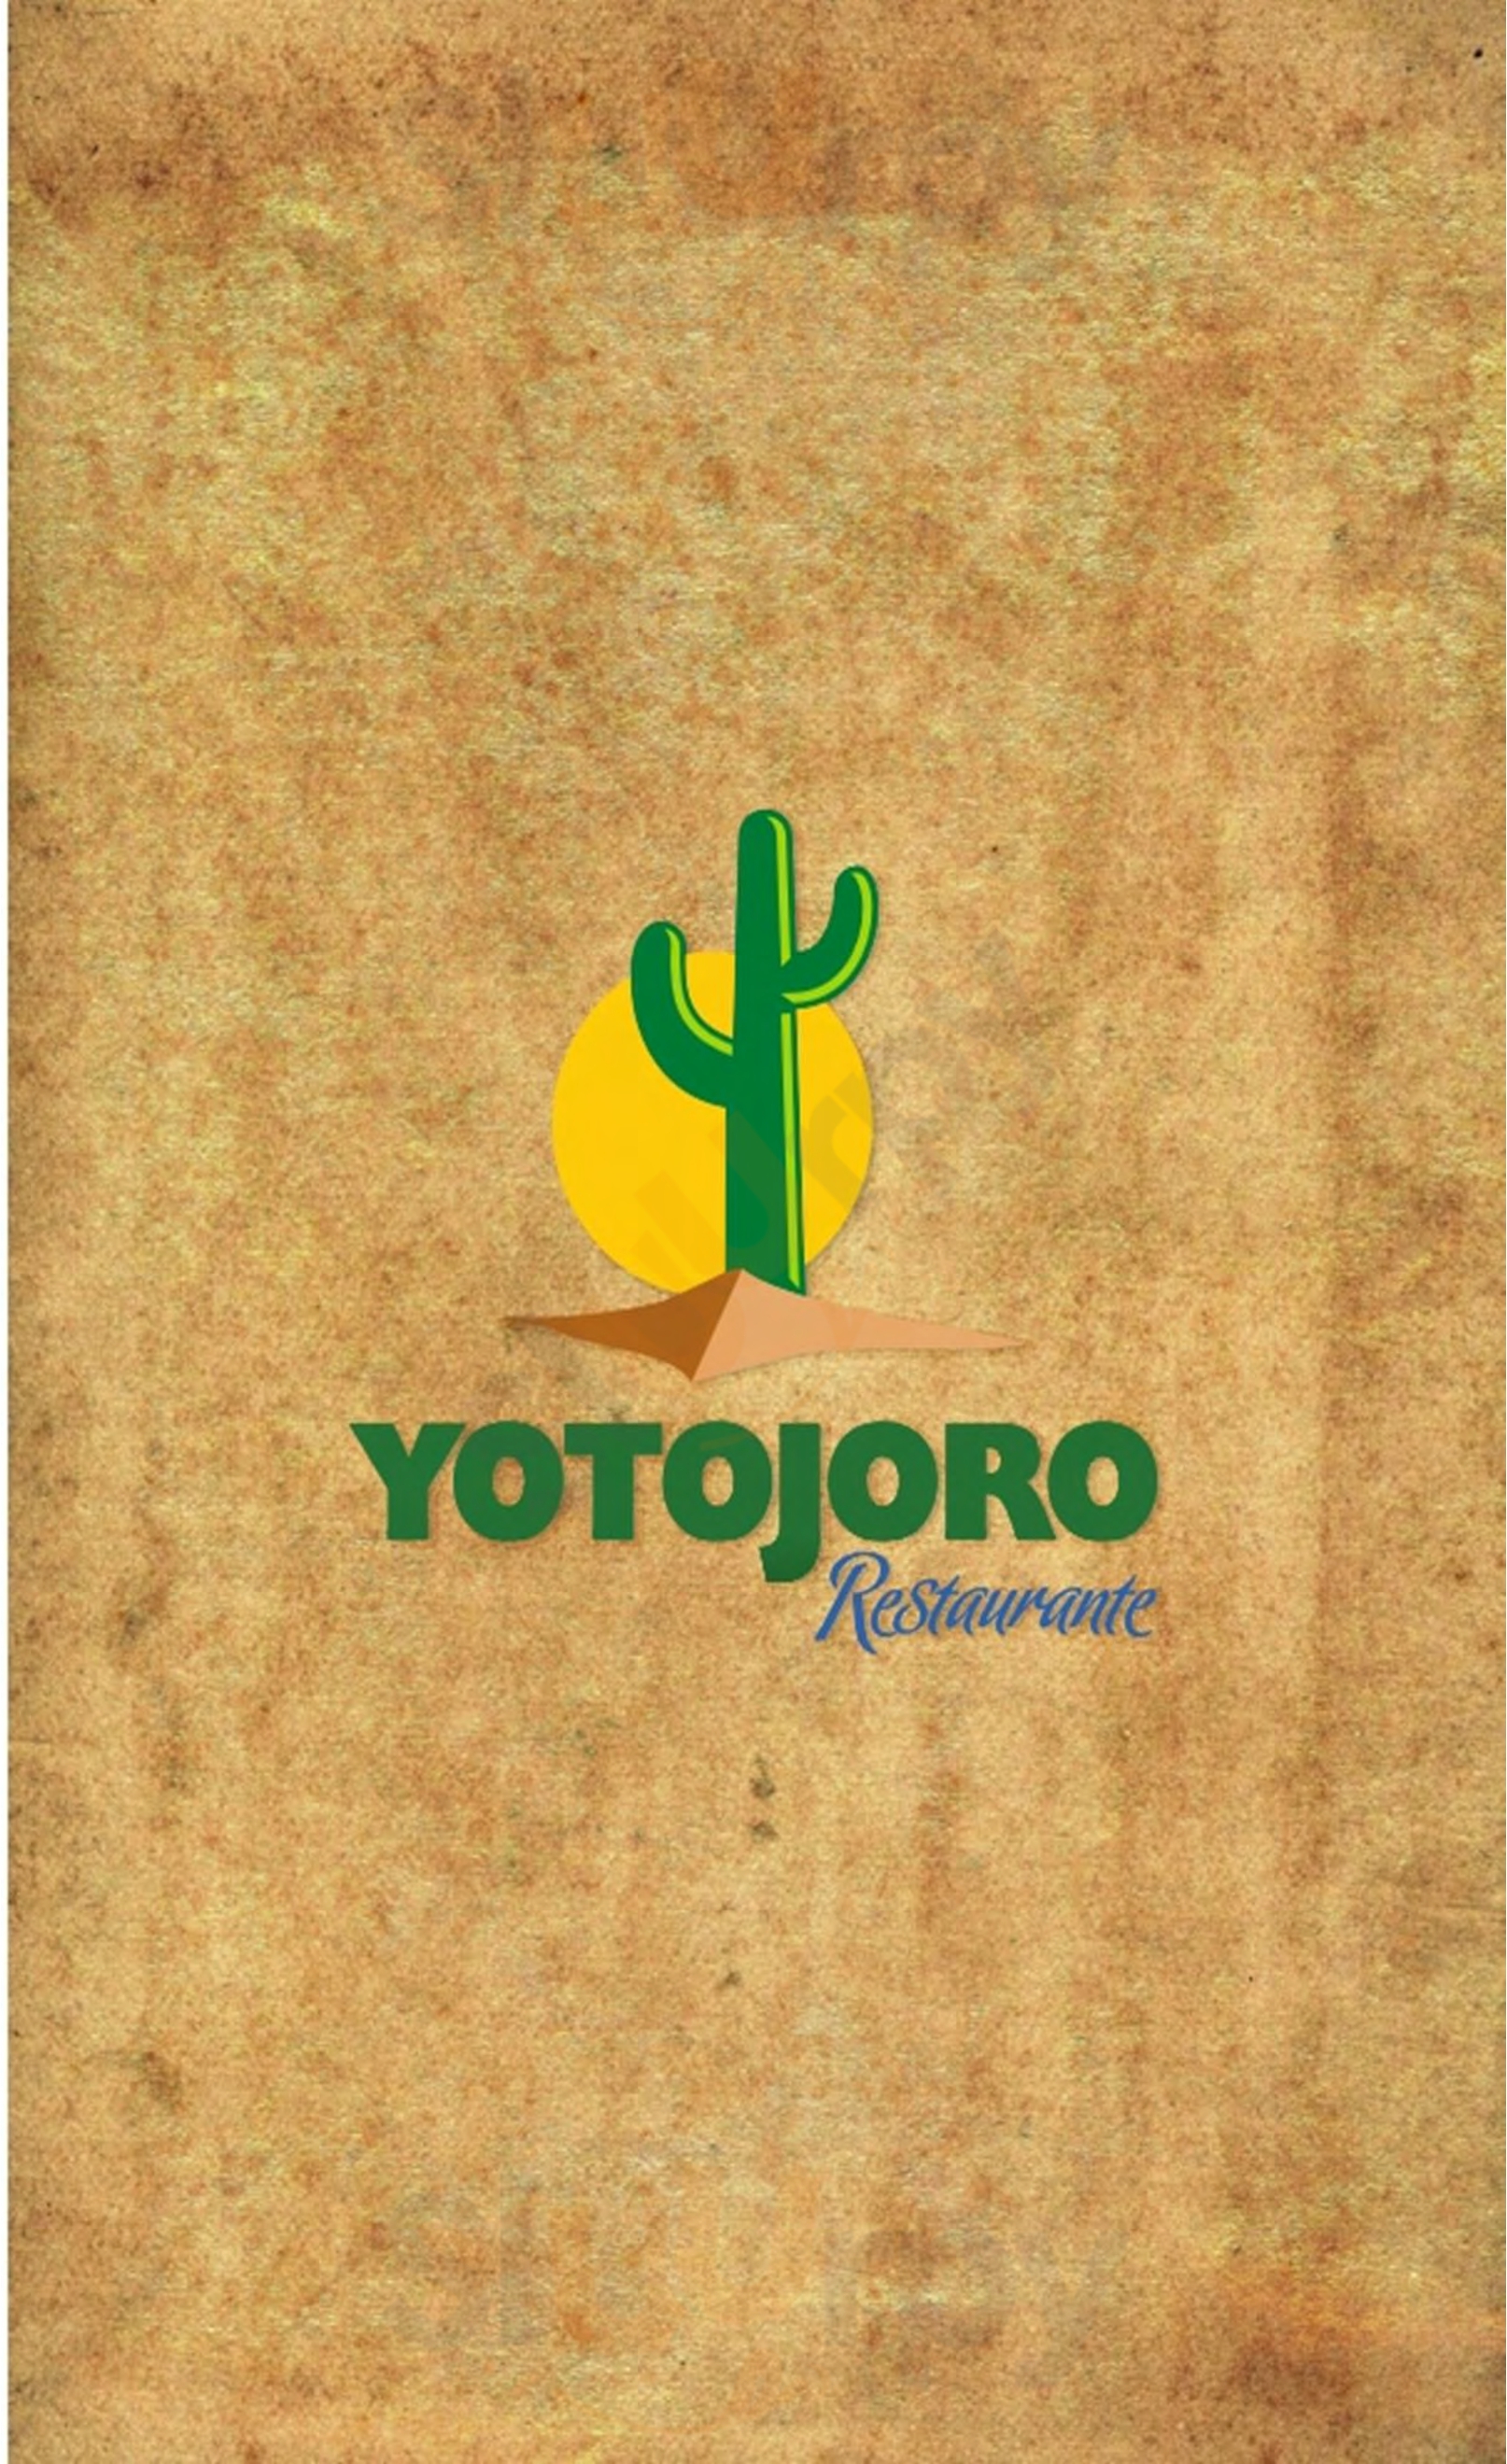 Restaurante Yotojoro Riohacha Menu - 1